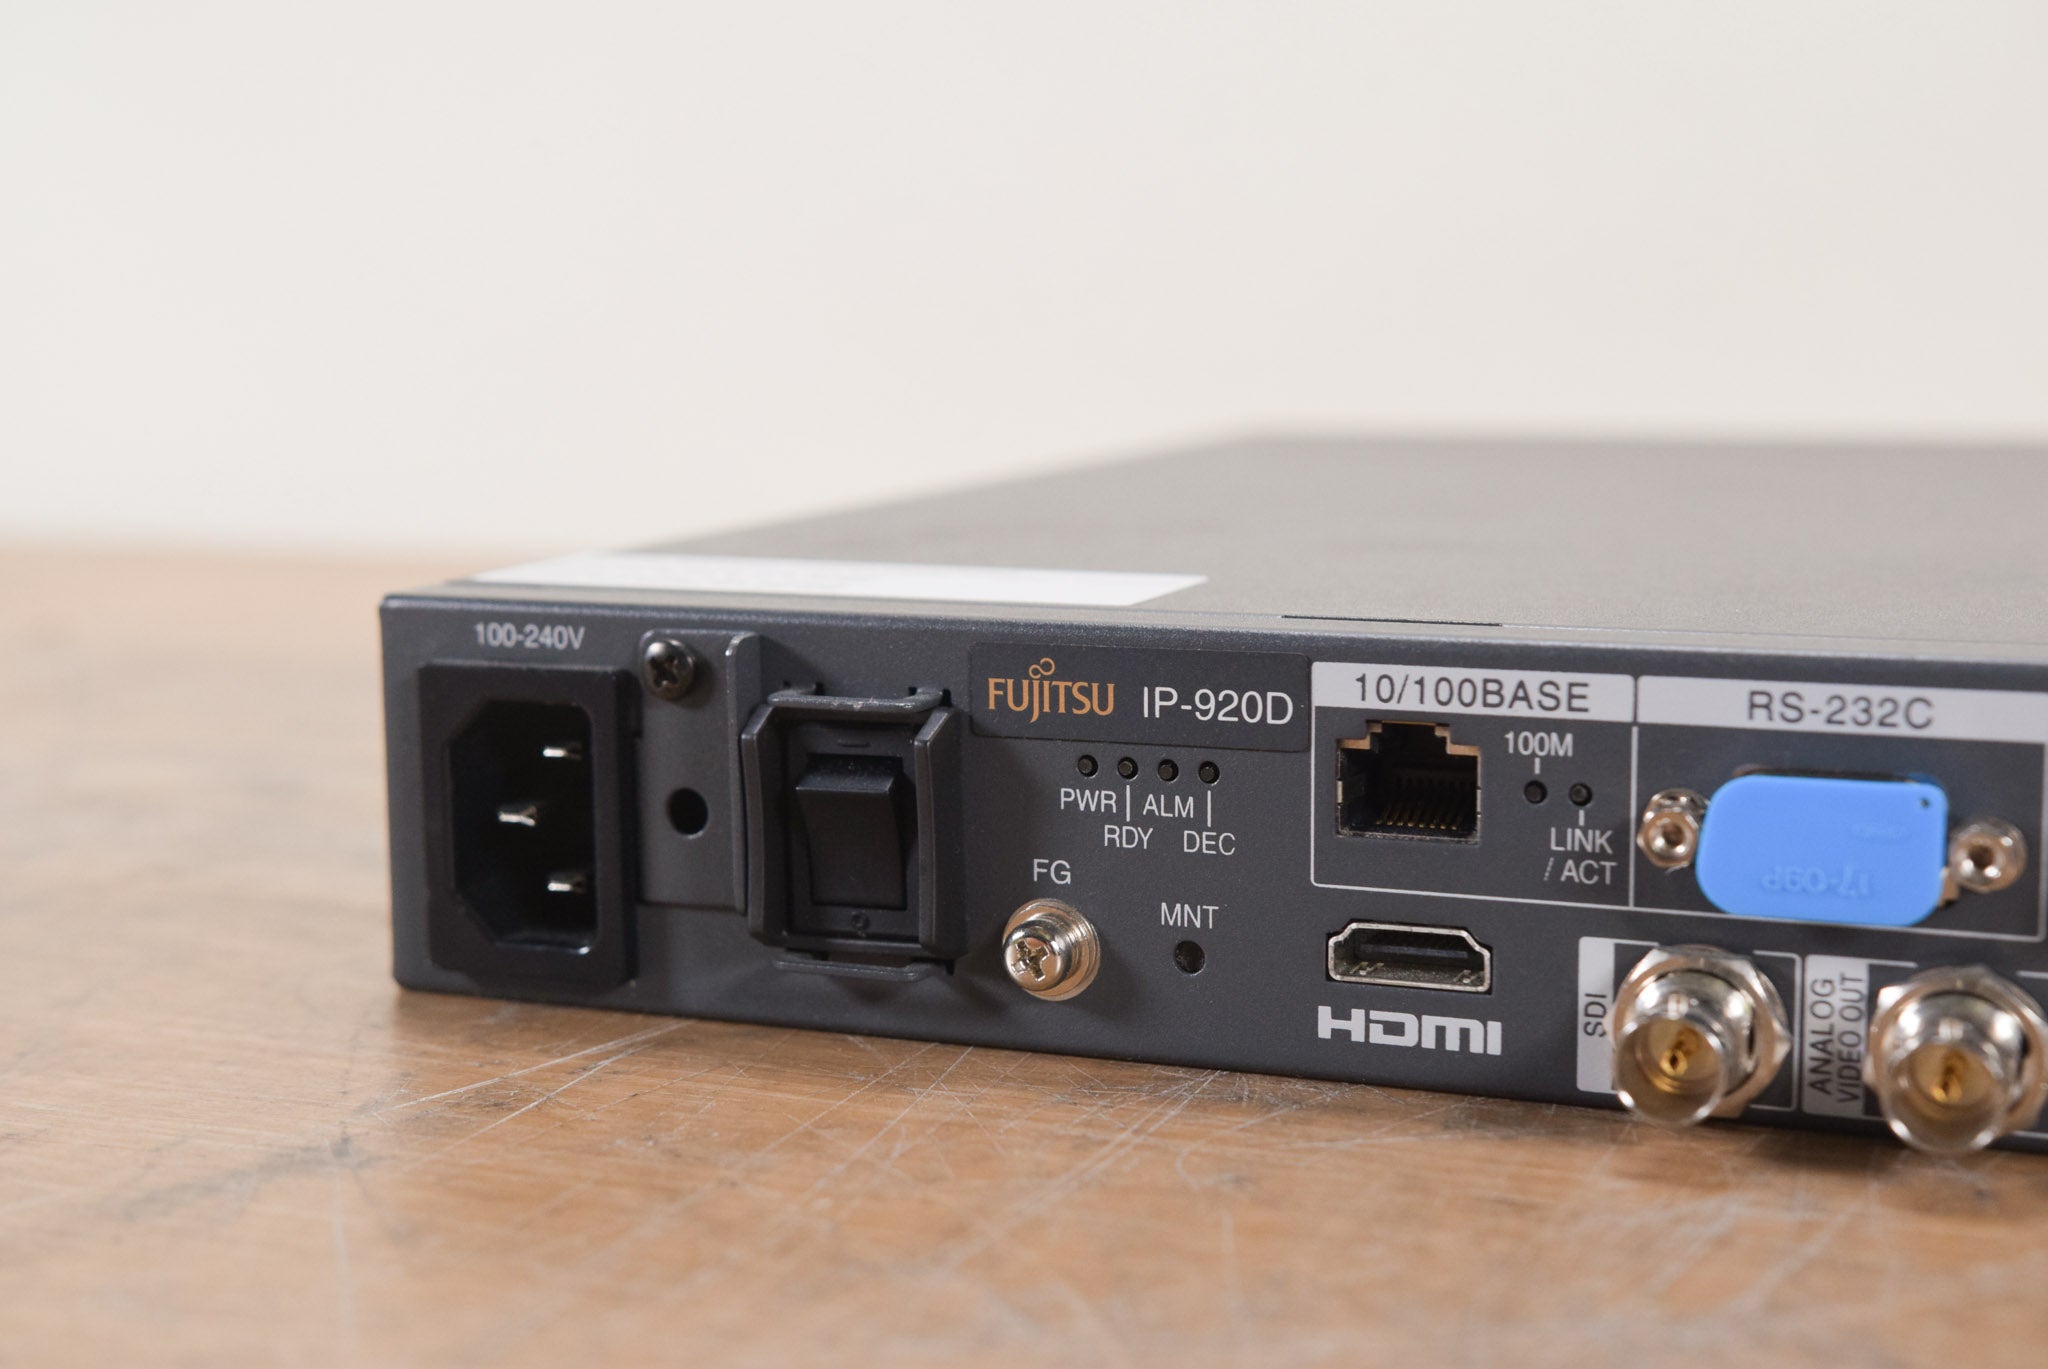 Fujitsu IP-920D HD/SD MPEG 4 AVC Video Decoder